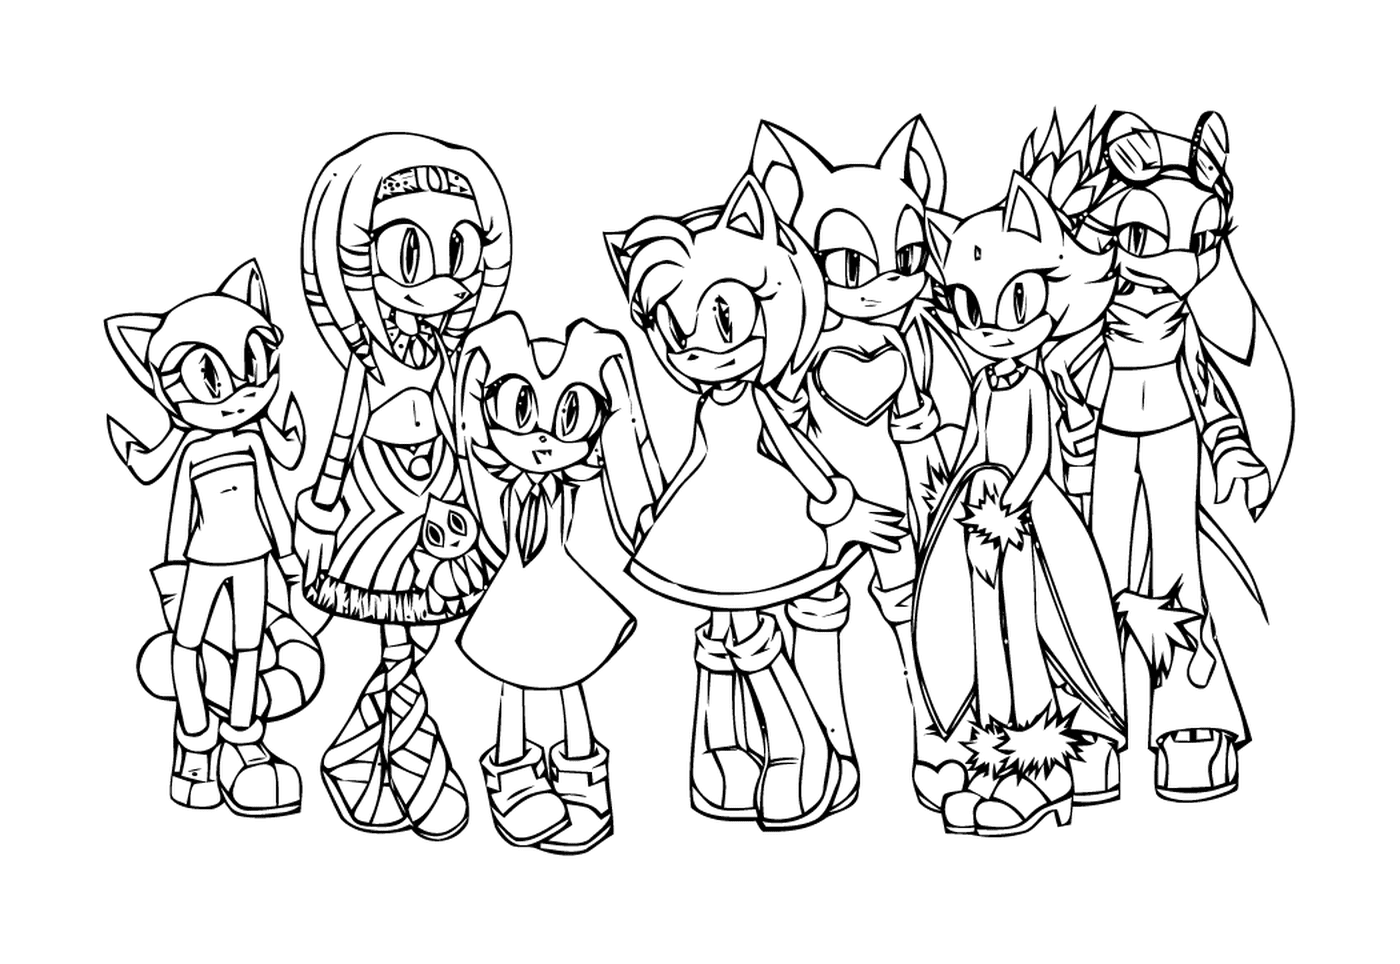   Sonic et ses amis unis 